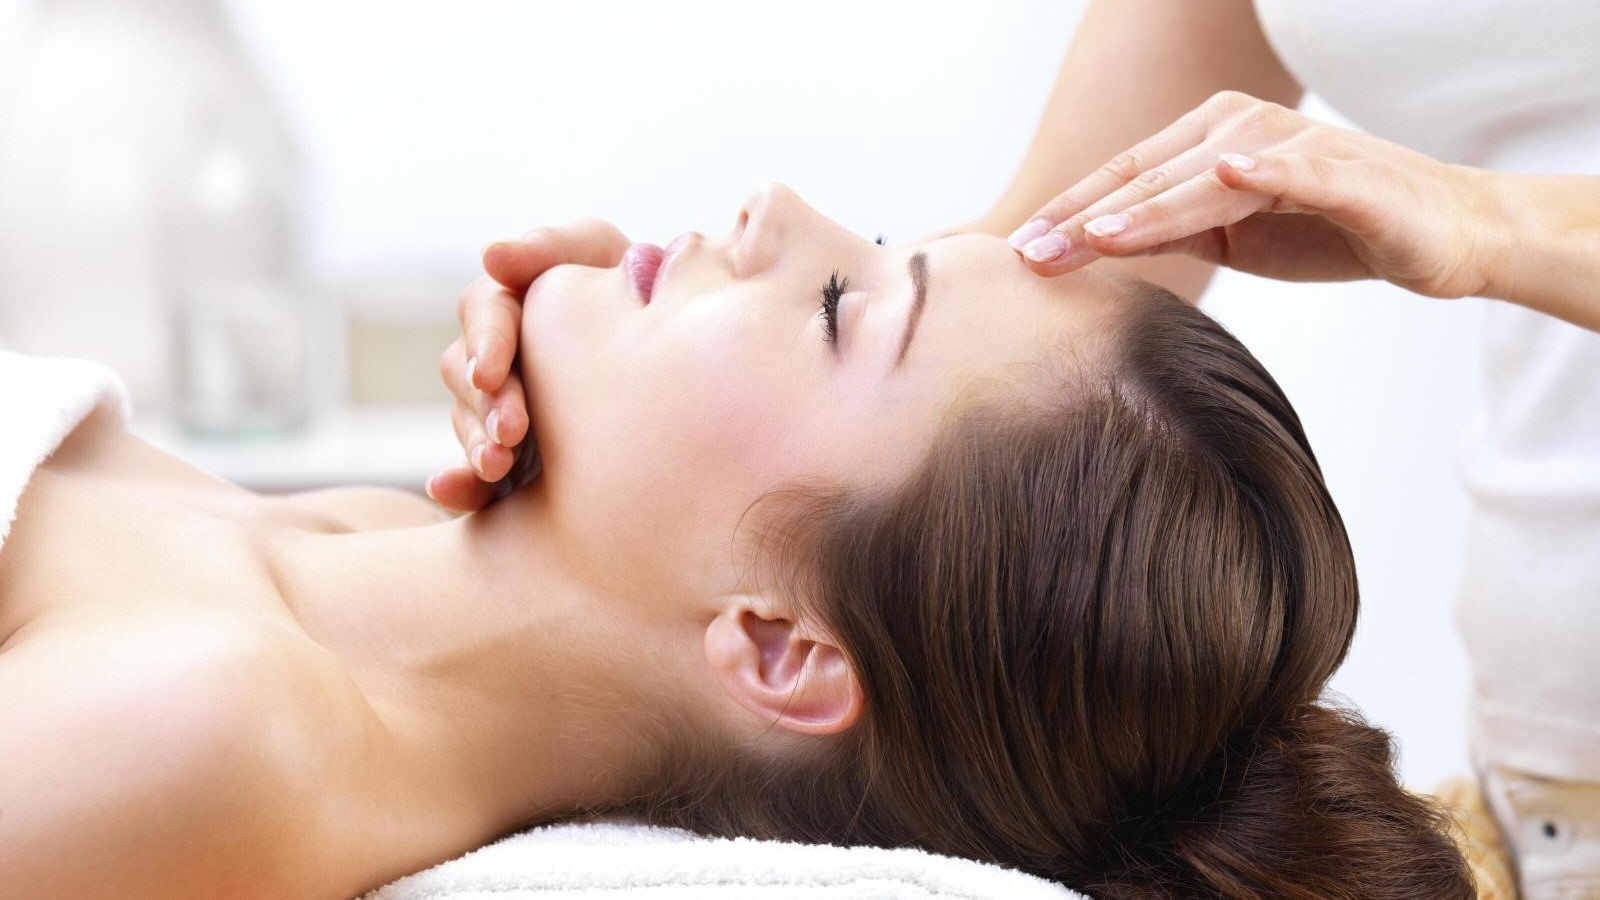 Làm thế nào để massage dây thần kinh số 7 hiệu quả?